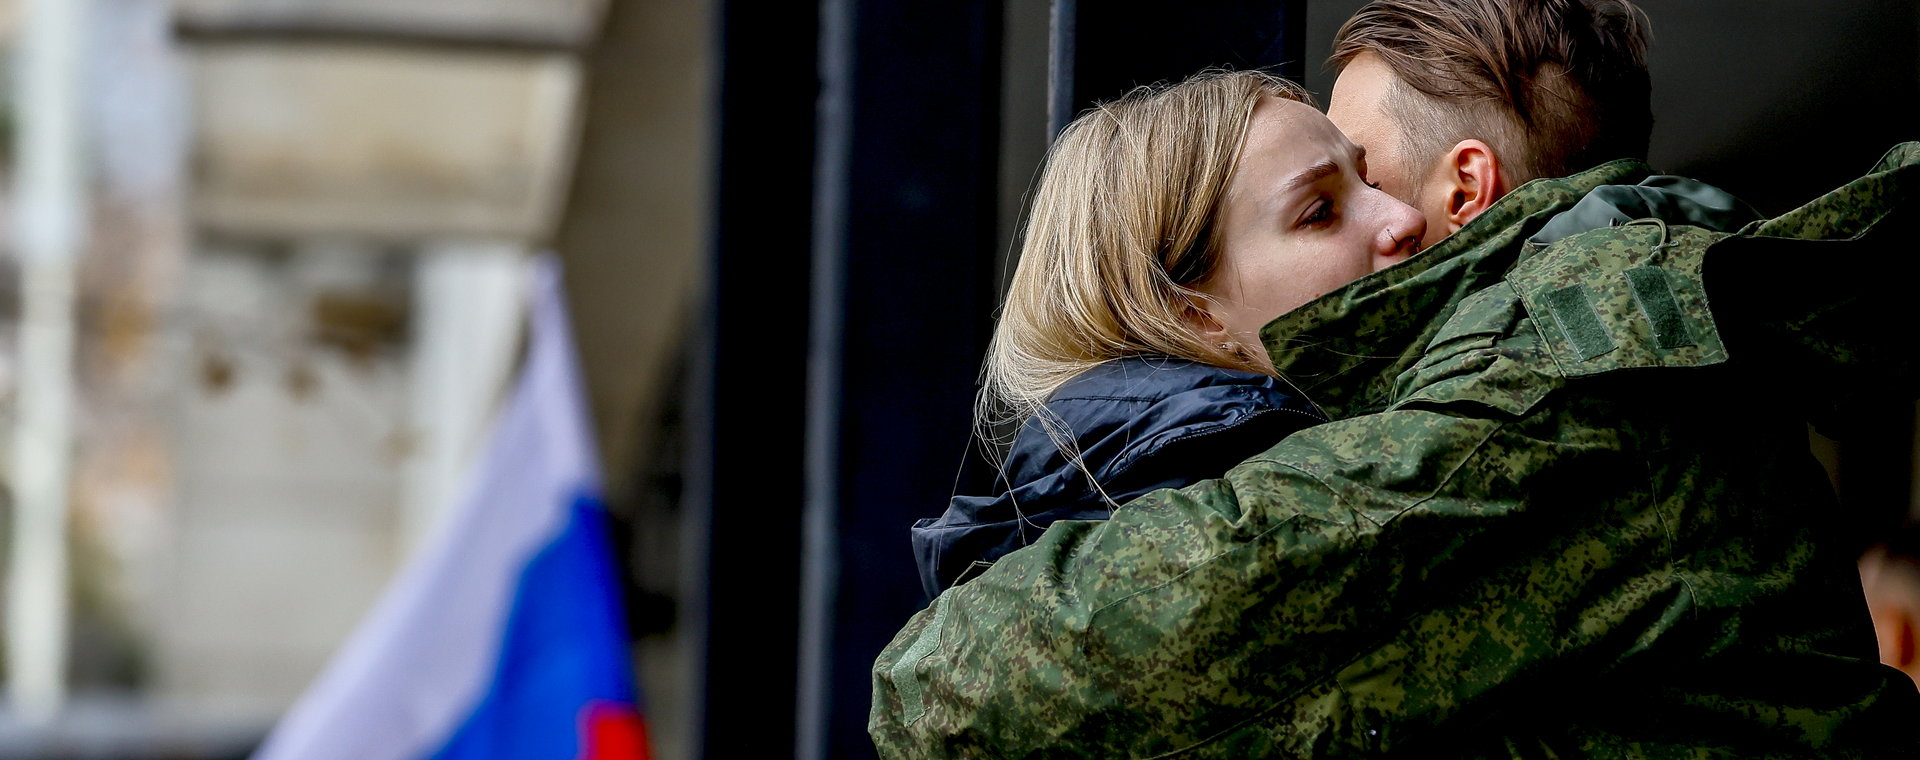 Zarządzona w Rosji mobilizacja jest częściowa tylko z nazwy. W praktyce dekret dopuszcza nabór wszystkich obywateli zobowiązanych do służby wojskowej.